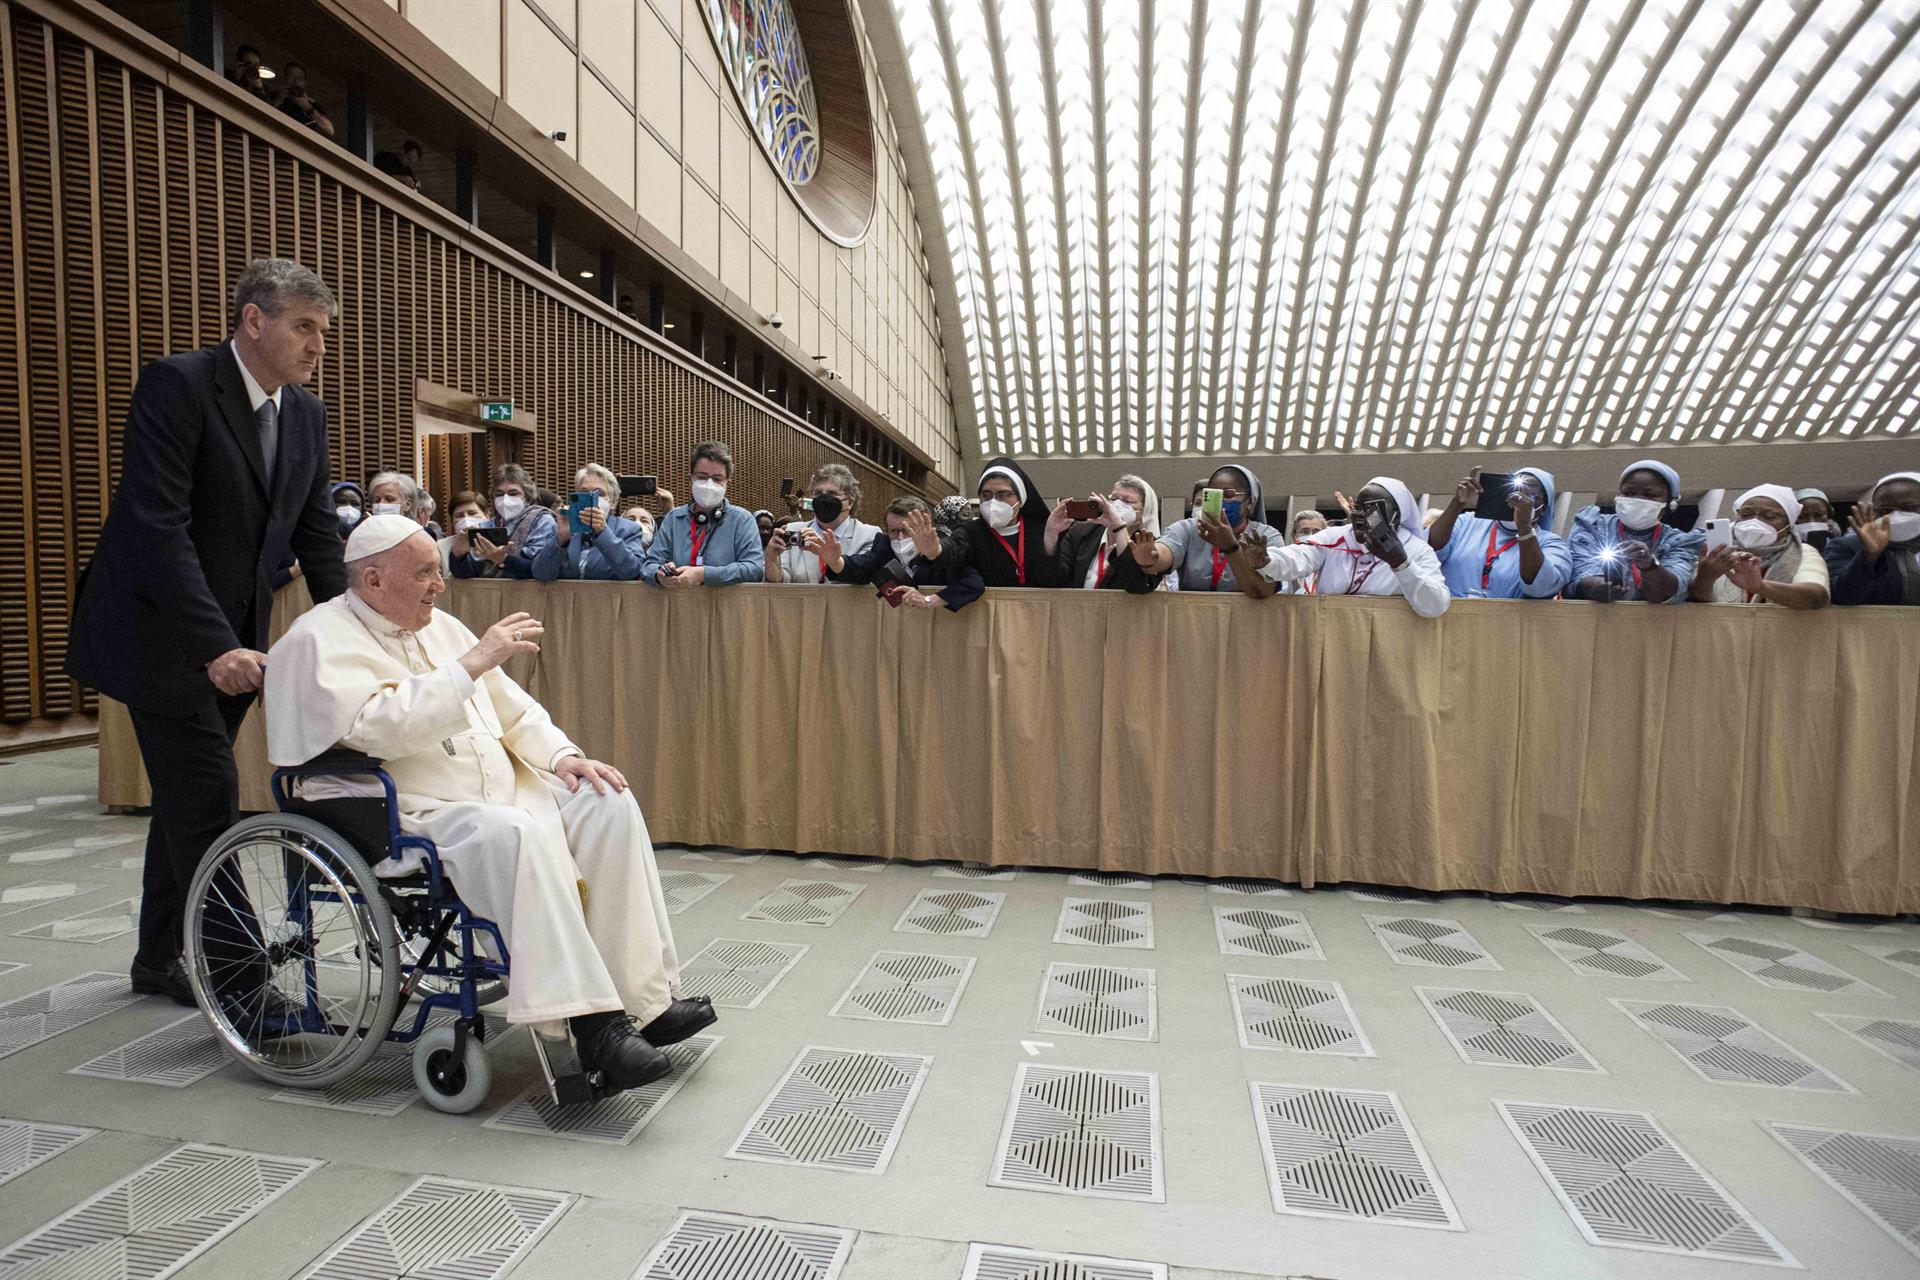 El papa Francisco en silla de ruedas   Efe (2)